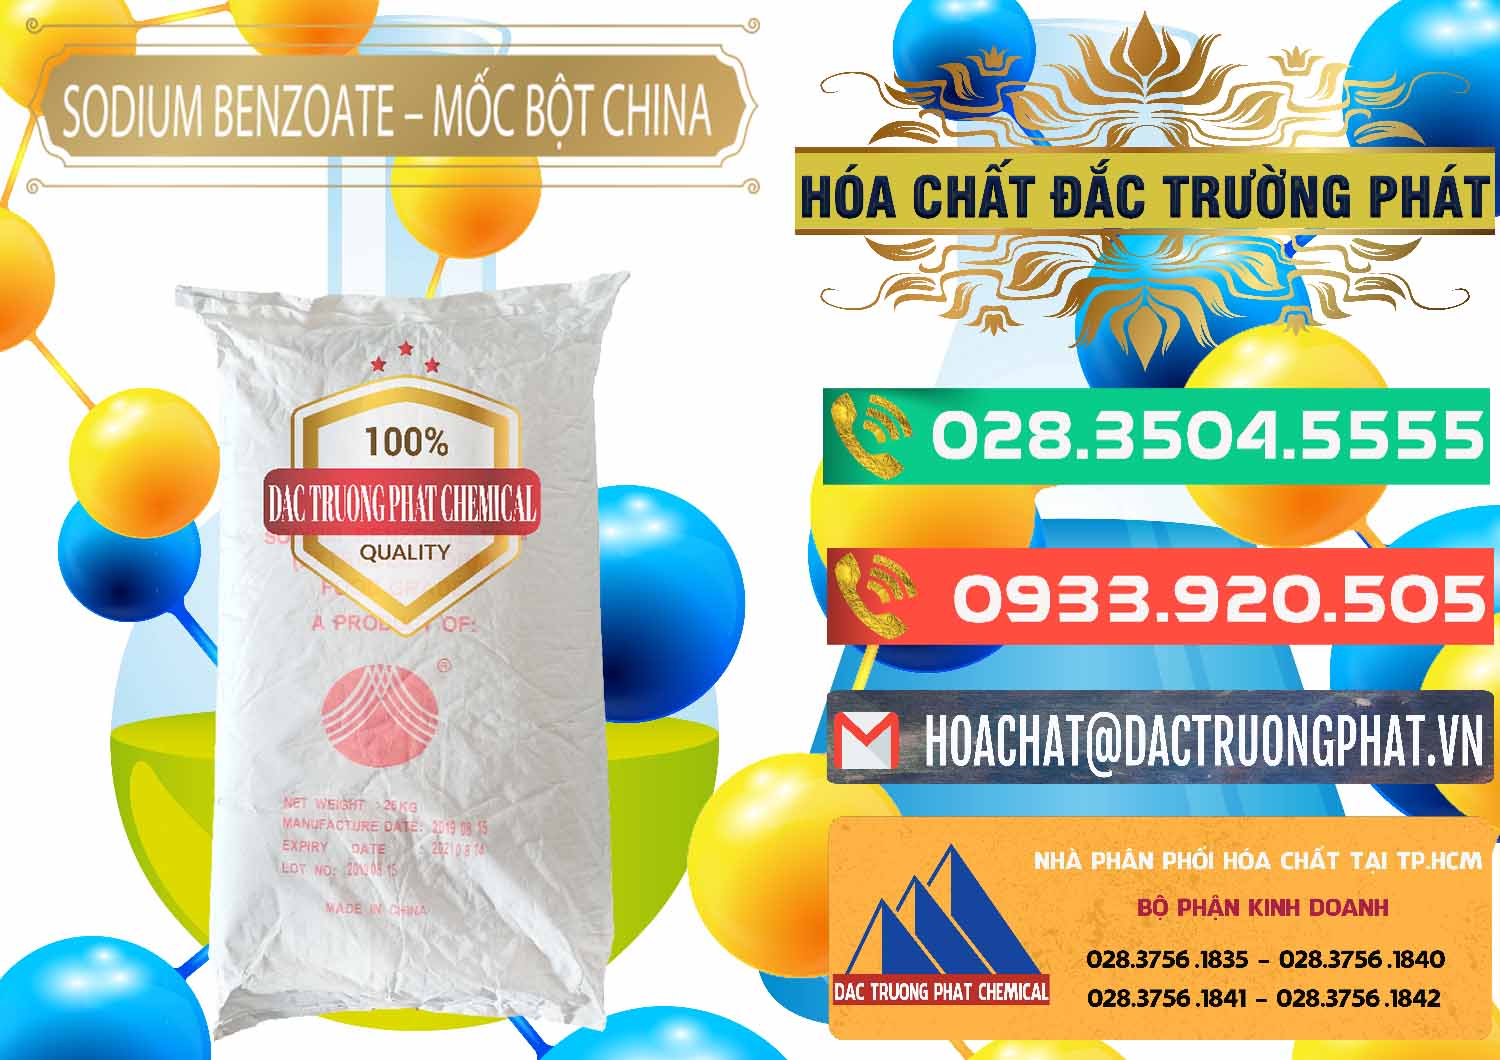 Cty cung cấp _ bán Sodium Benzoate - Mốc Bột Chữ Cam Food Grade Trung Quốc China - 0135 - Cty chuyên kinh doanh và cung cấp hóa chất tại TP.HCM - congtyhoachat.com.vn